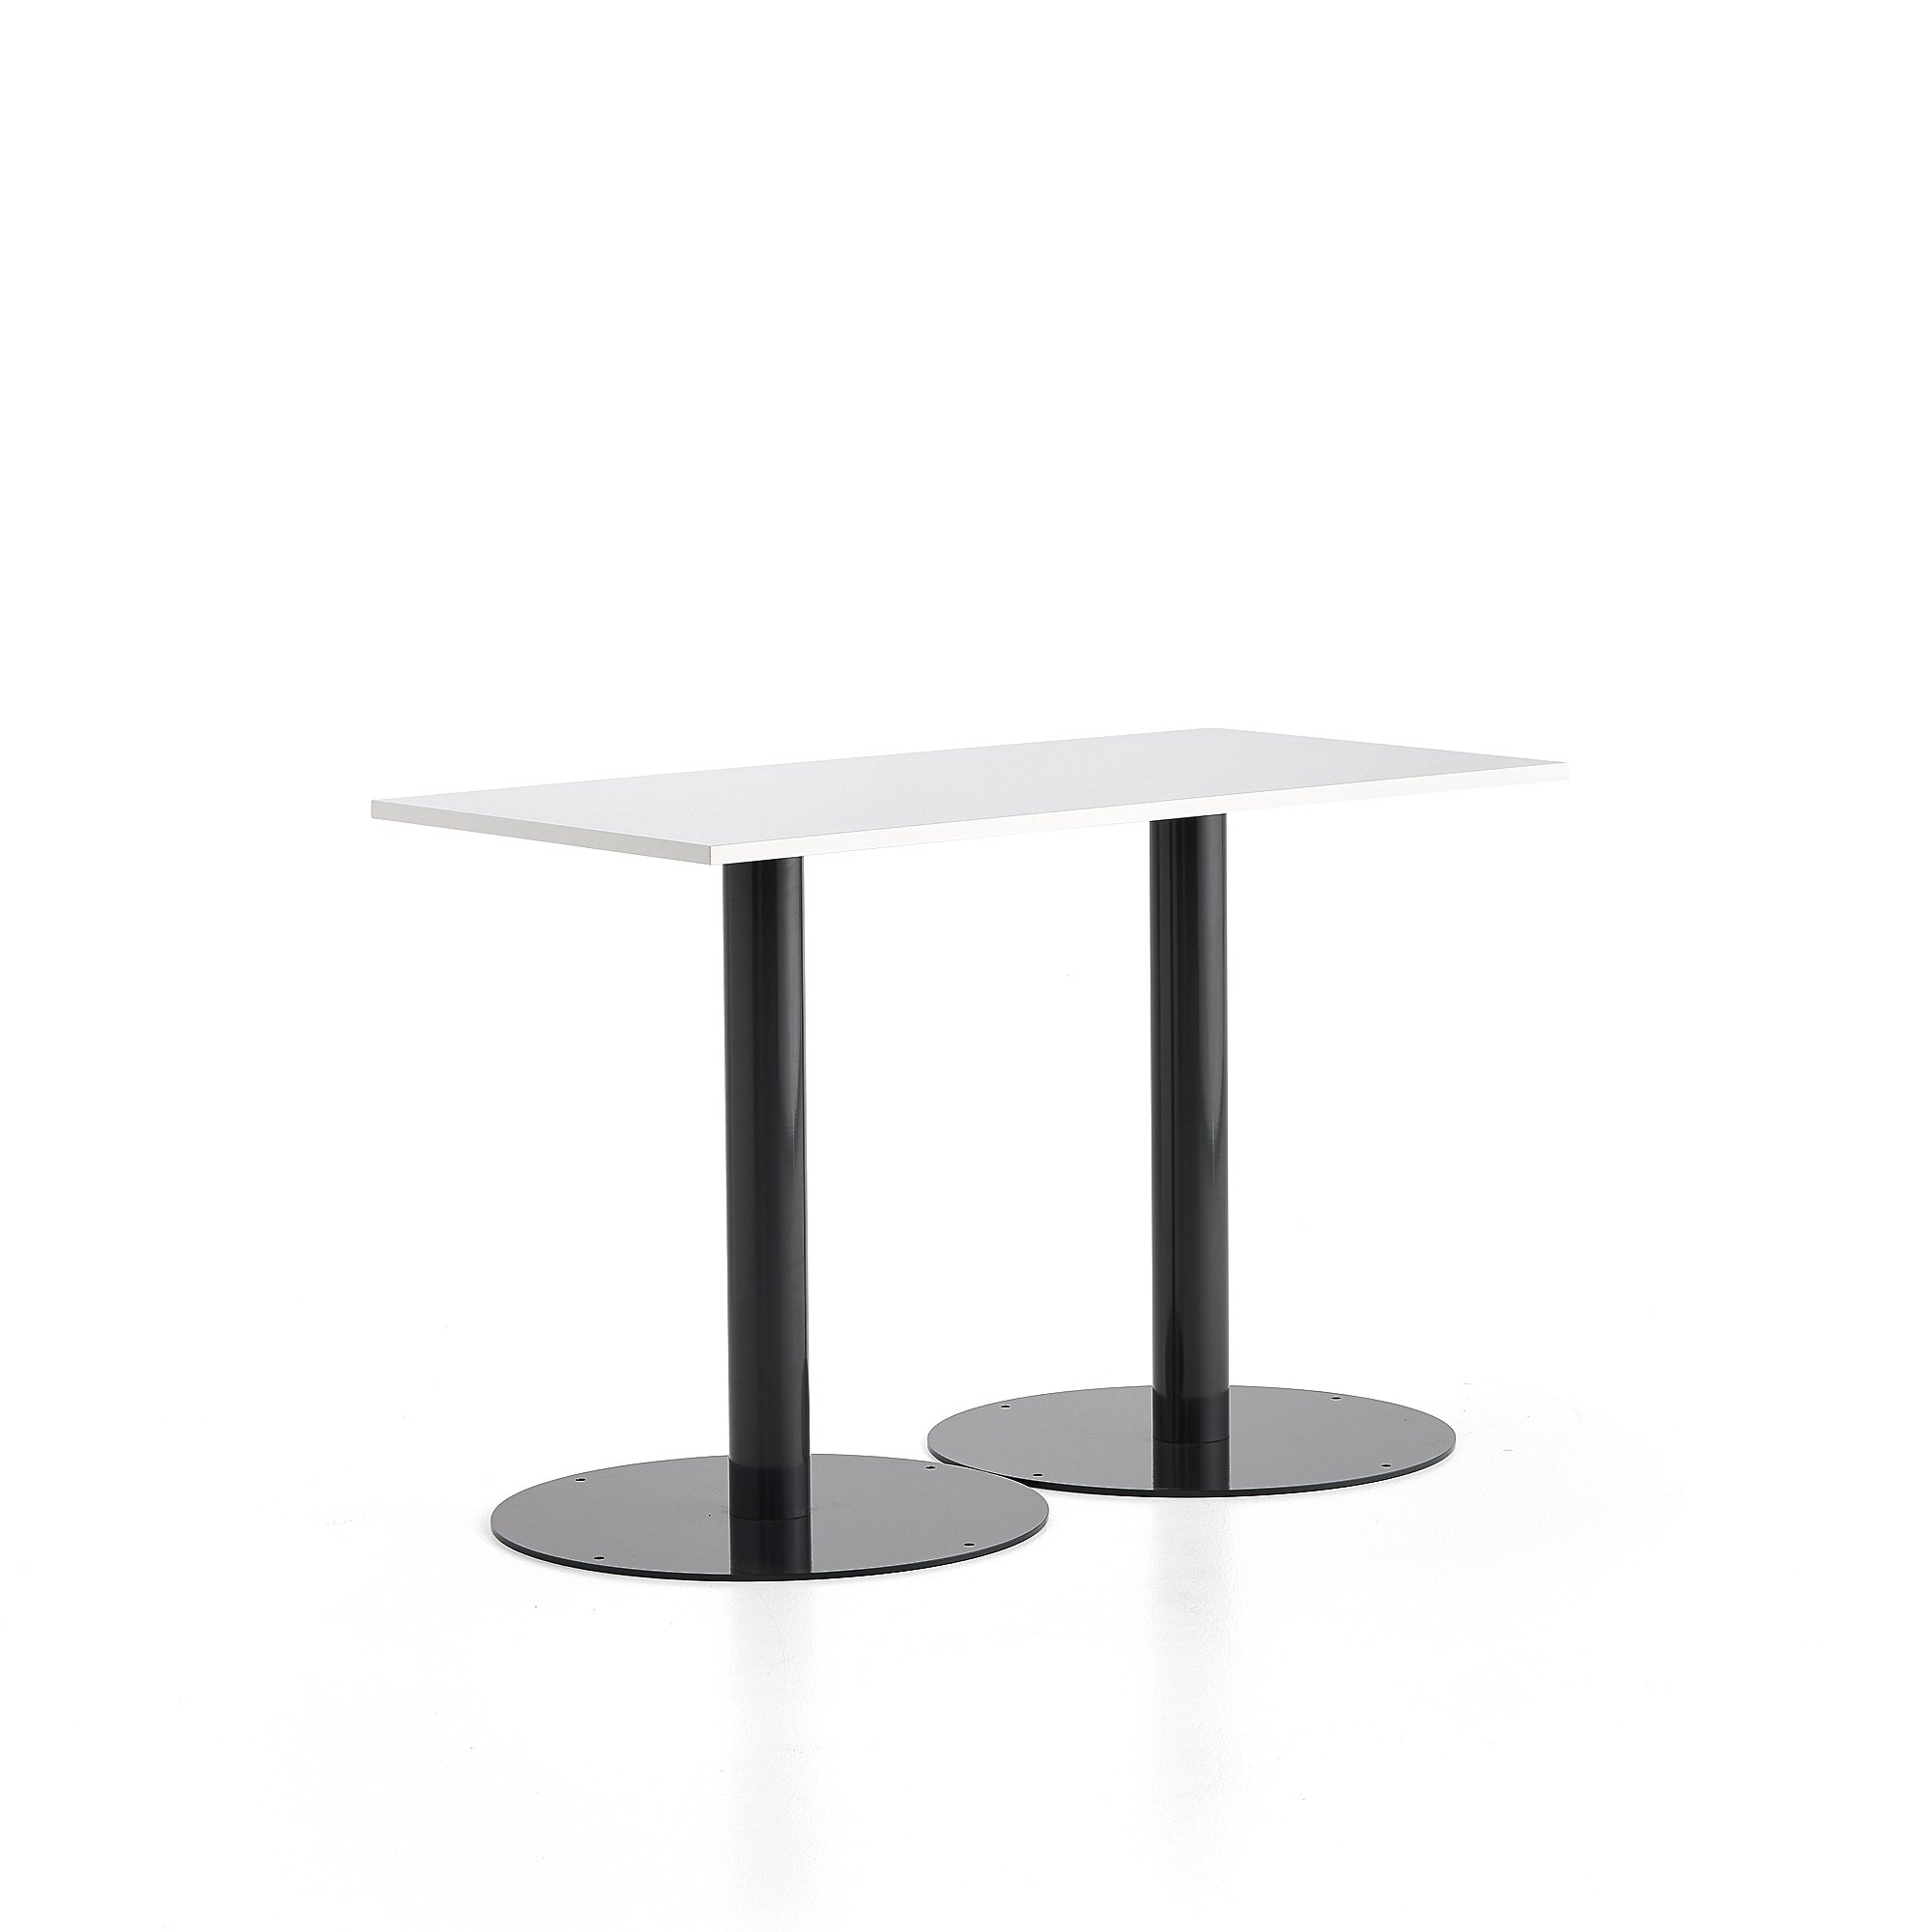 Stůl ALVA, 1400x700x900 mm, antracitová, bílá